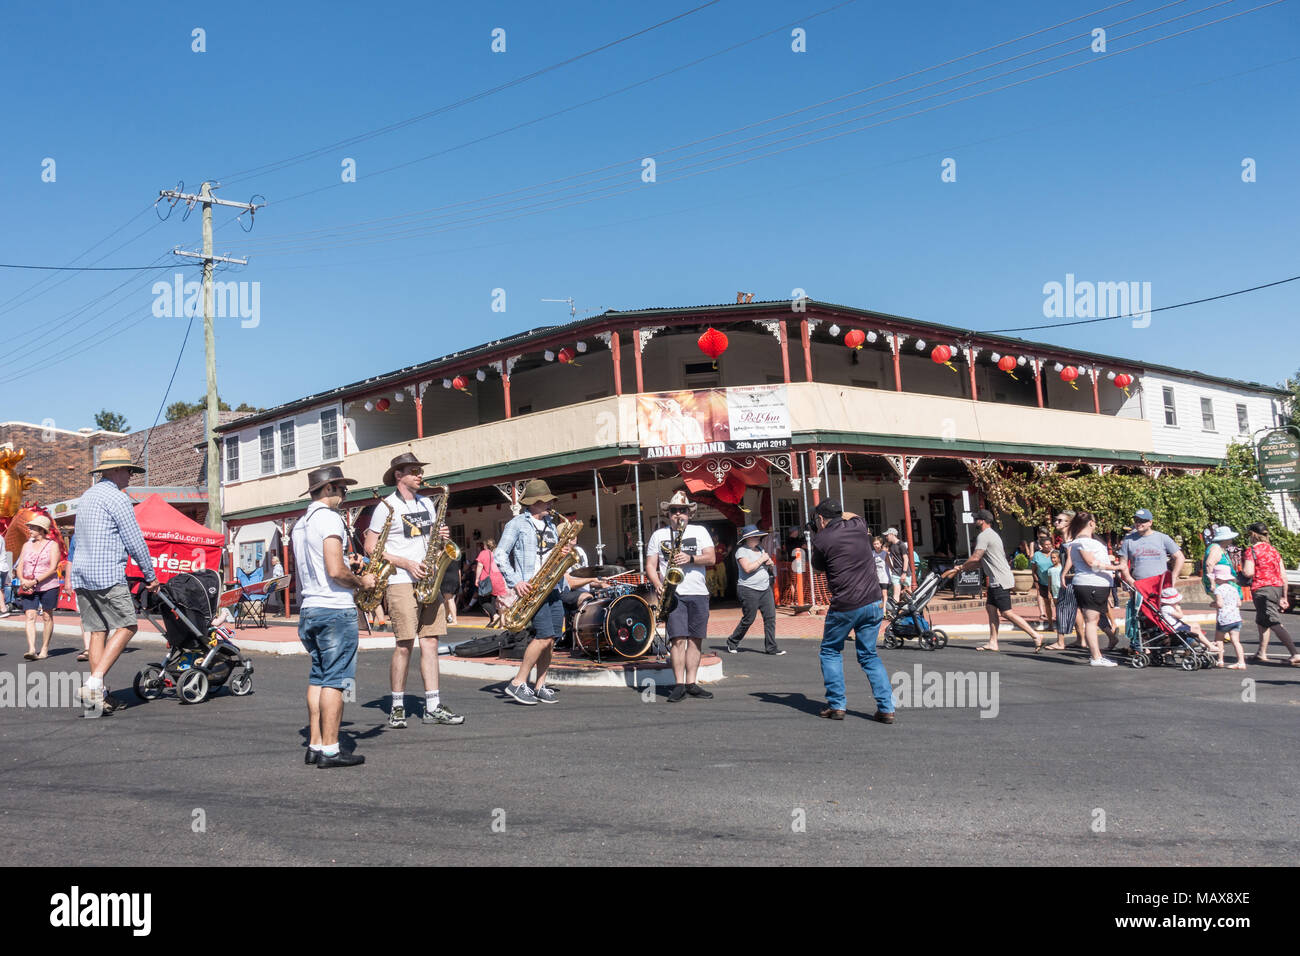 Straße Leistung von der Sax Summit Jazz Combo am Markttag in Nundle NSW Australien. Stockfoto